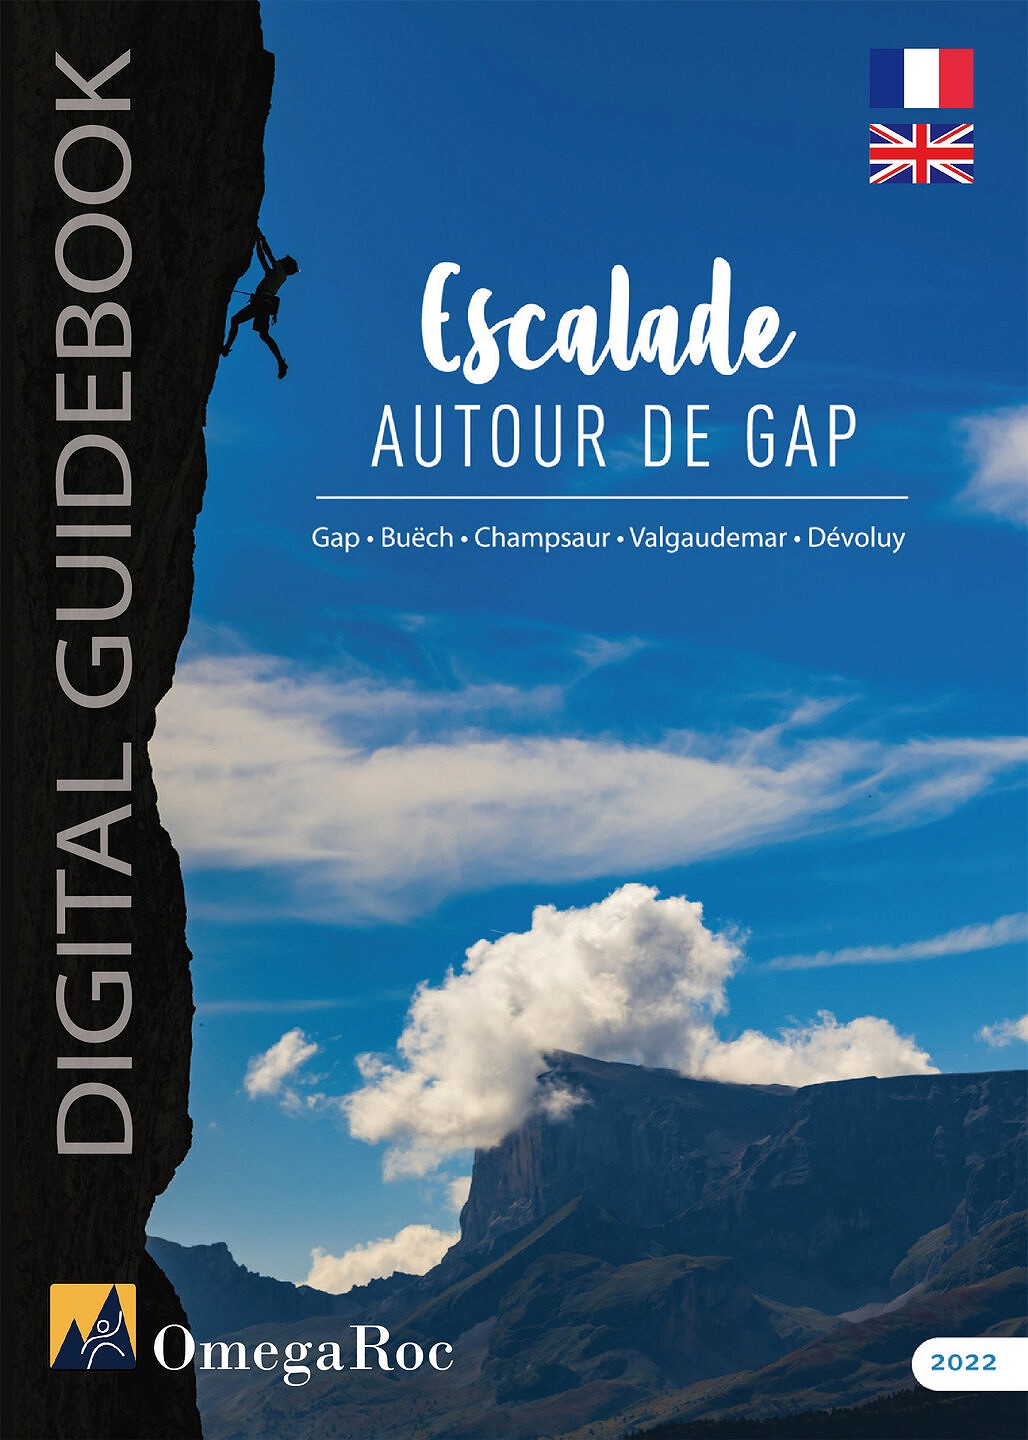 Escalade autour de Gap - Digital guidebook  © Sam Bié